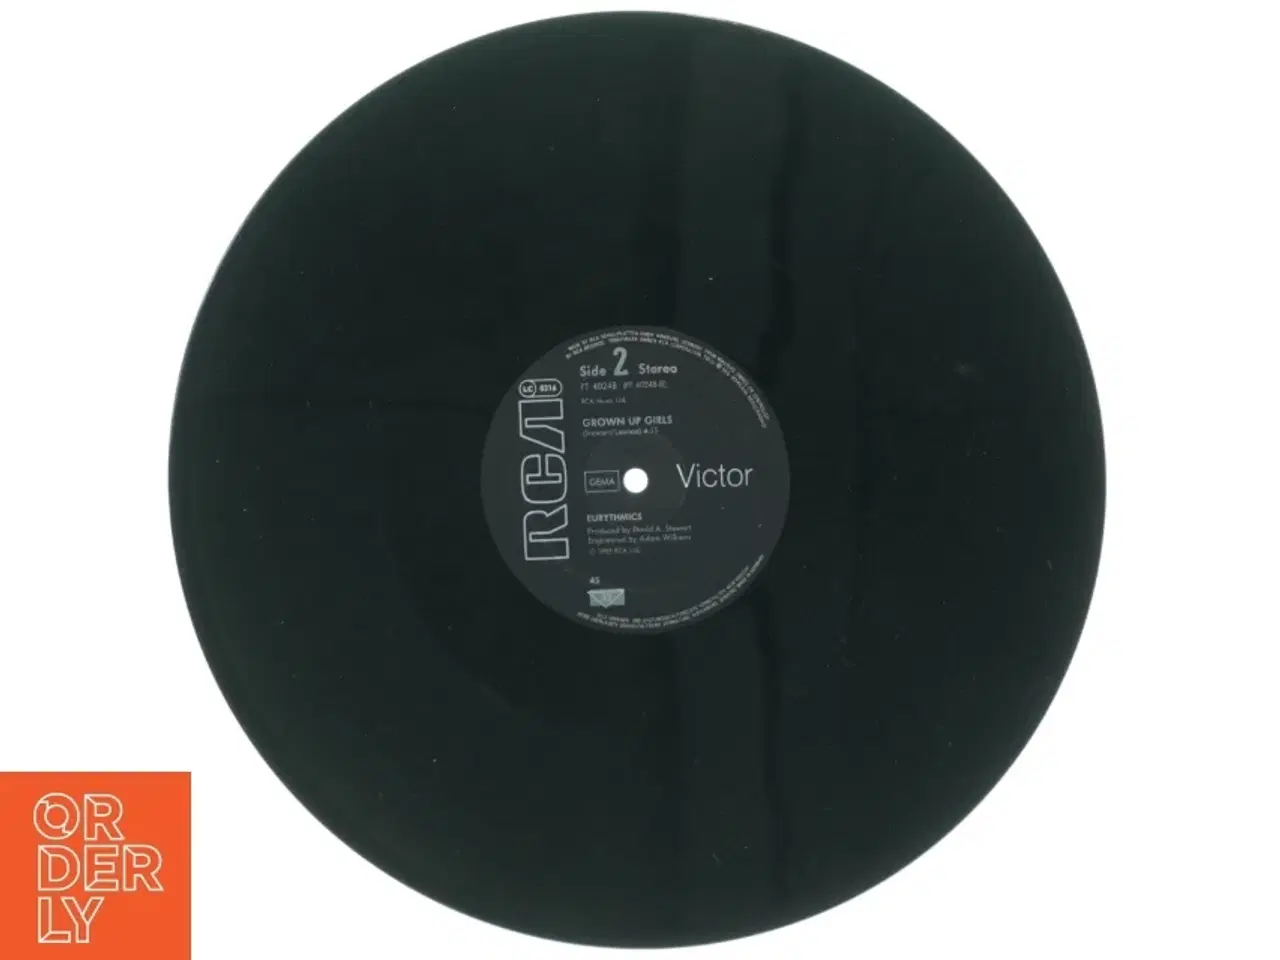 Billede 2 - Eurythmics EP fra RCA (str. 31 x 31 cm)